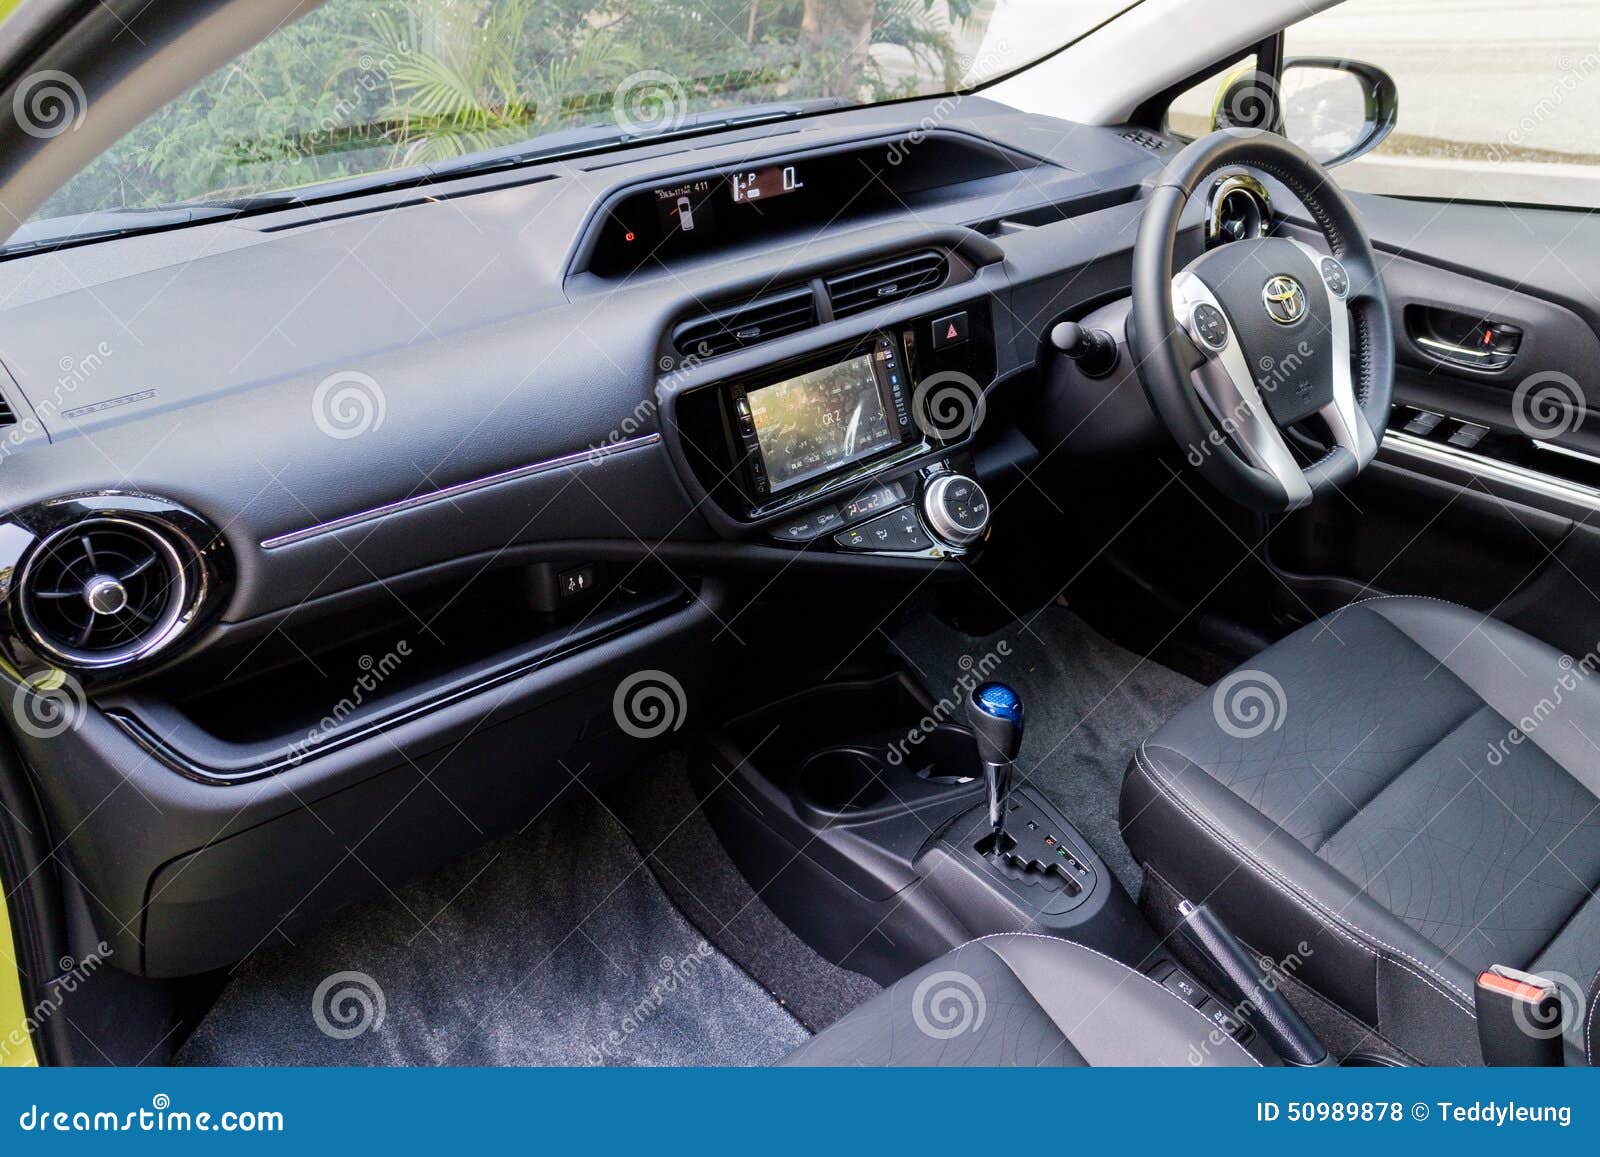 Toyota Prius C 2015 Interior Editorial Stock Photo Image